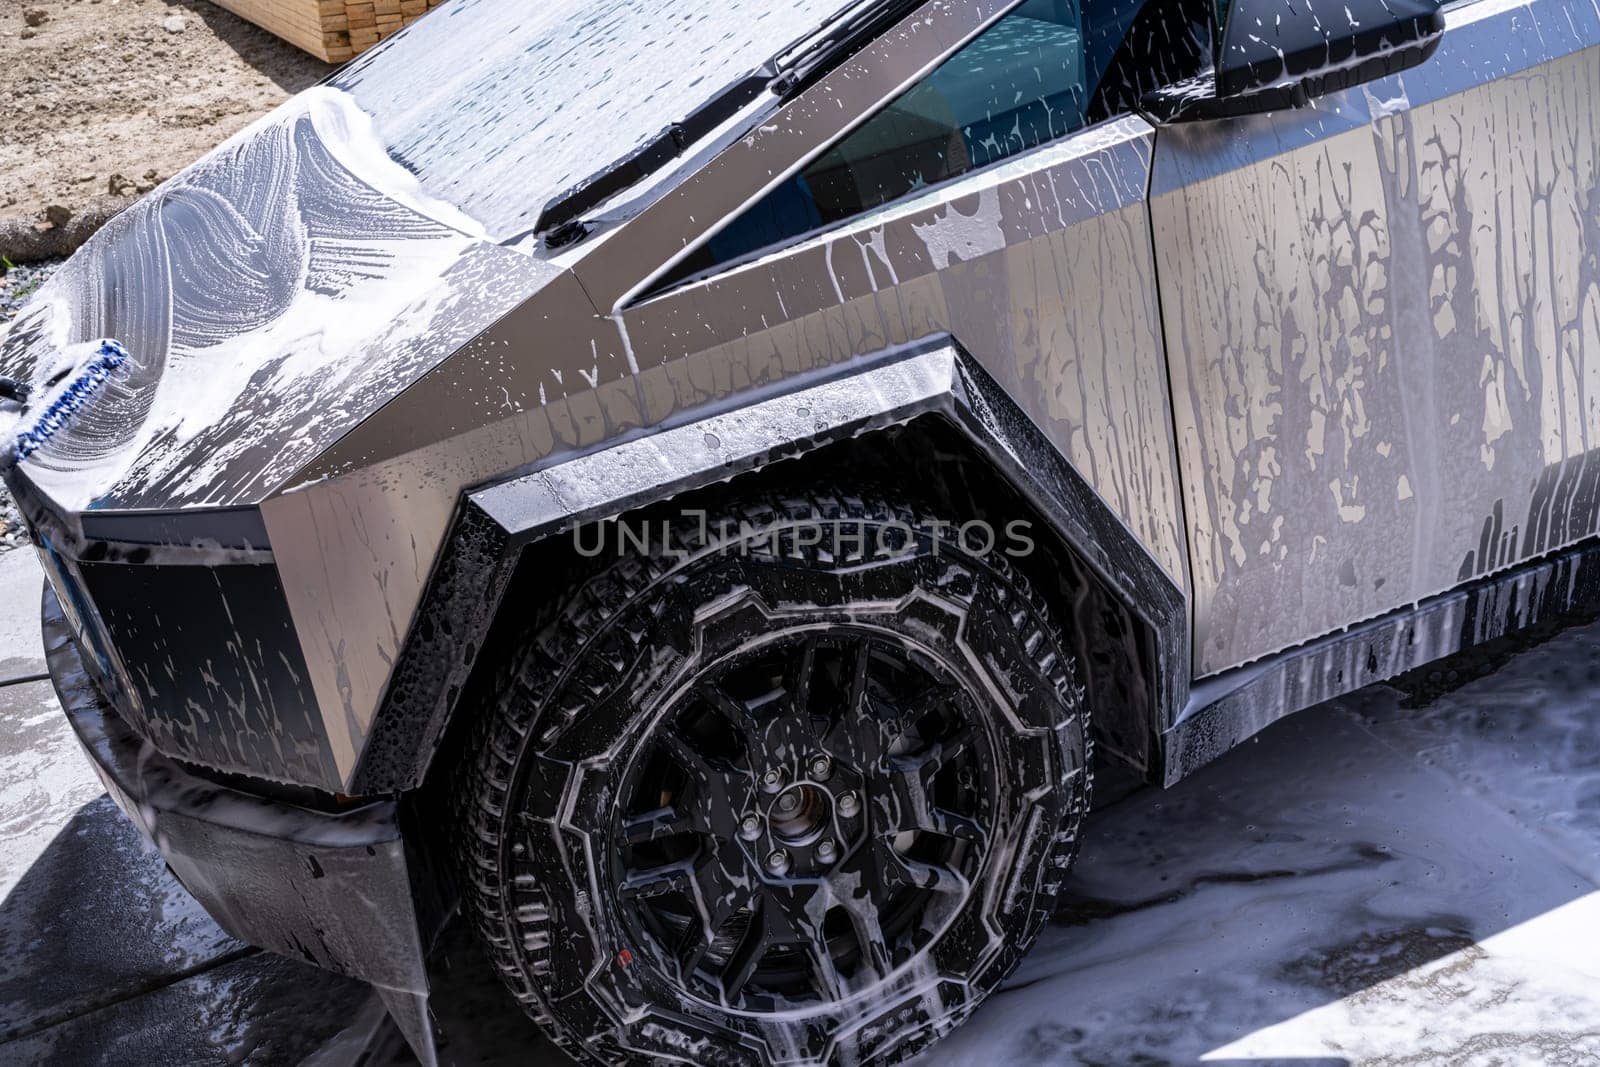 Washing a Tesla Cybertruck at a Car Wash by arinahabich